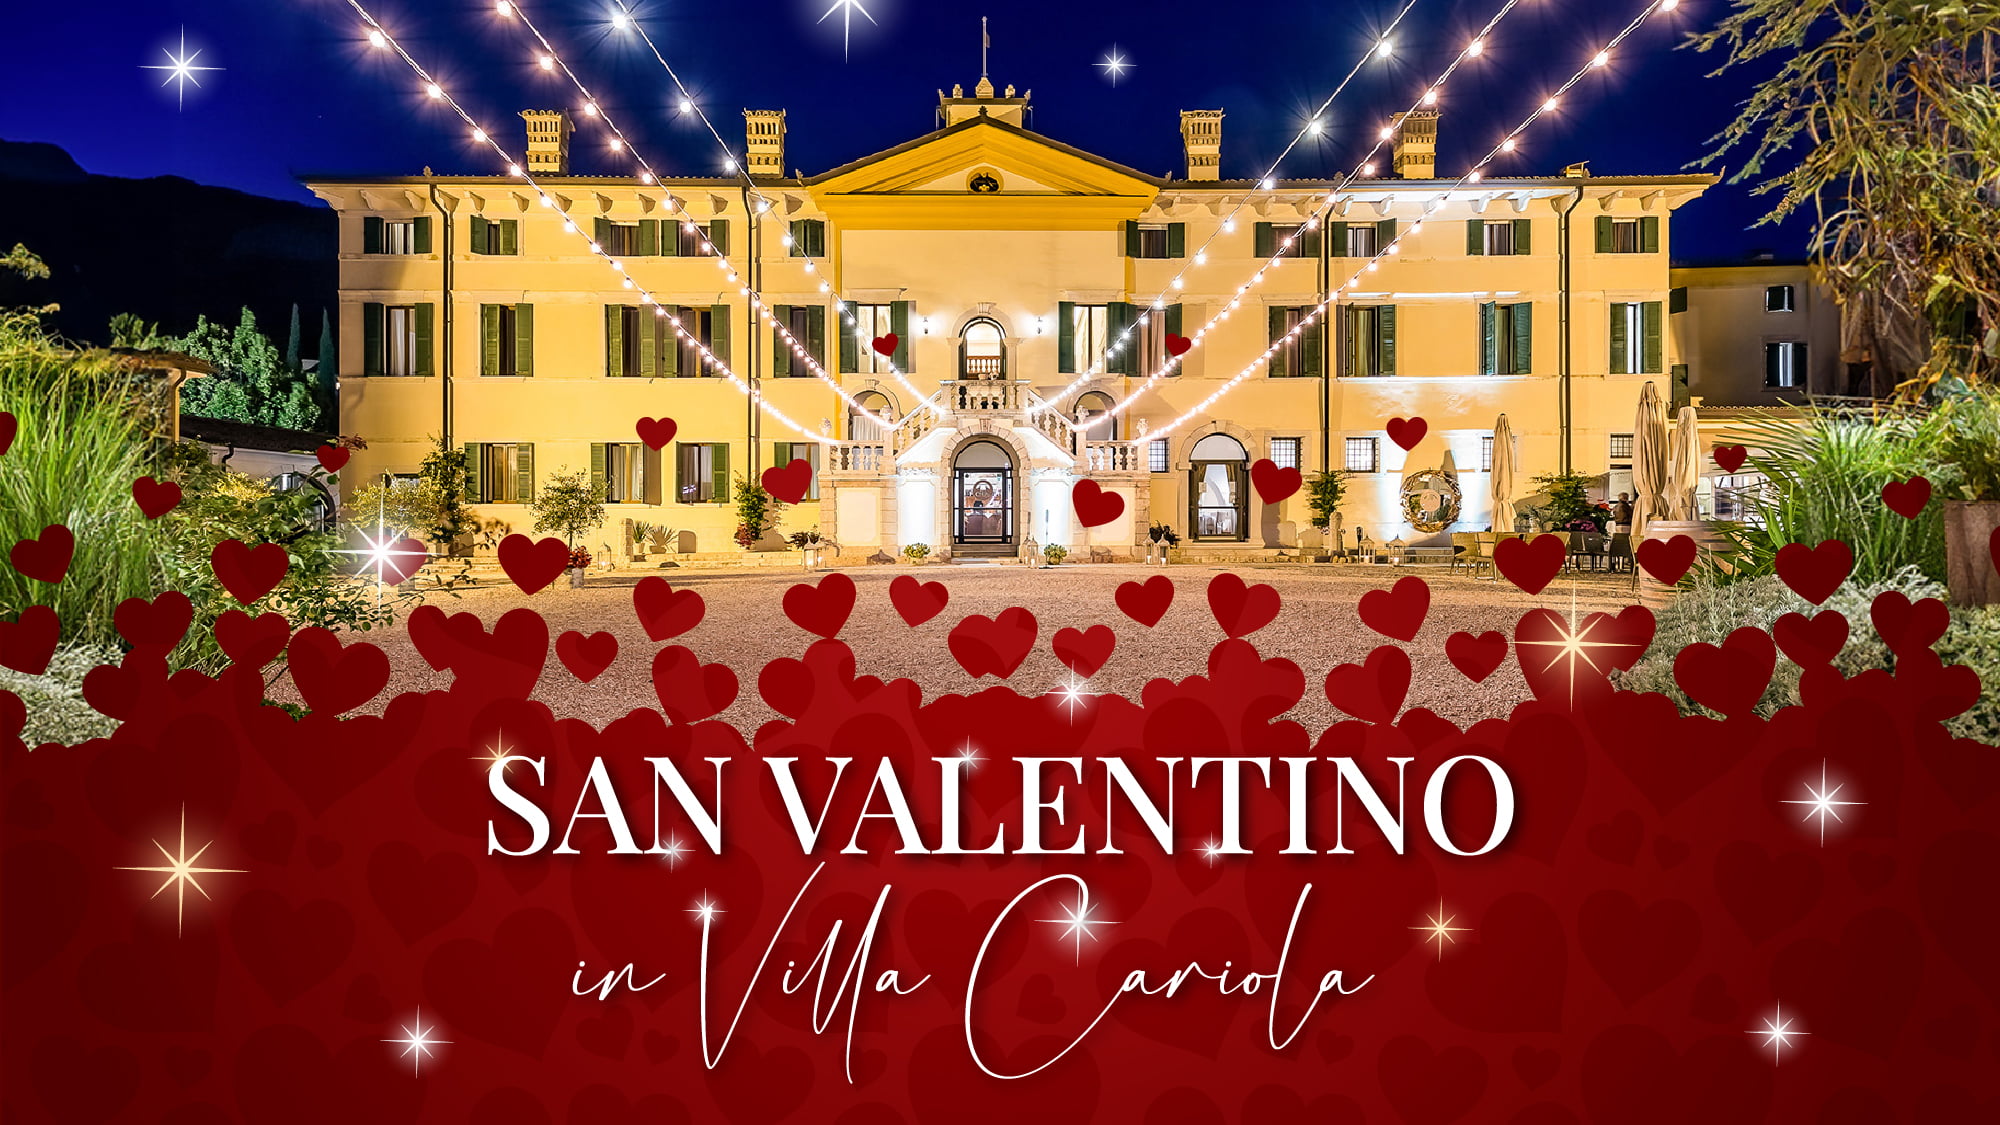 San Valentino in Villa Cariola - Villa cariola